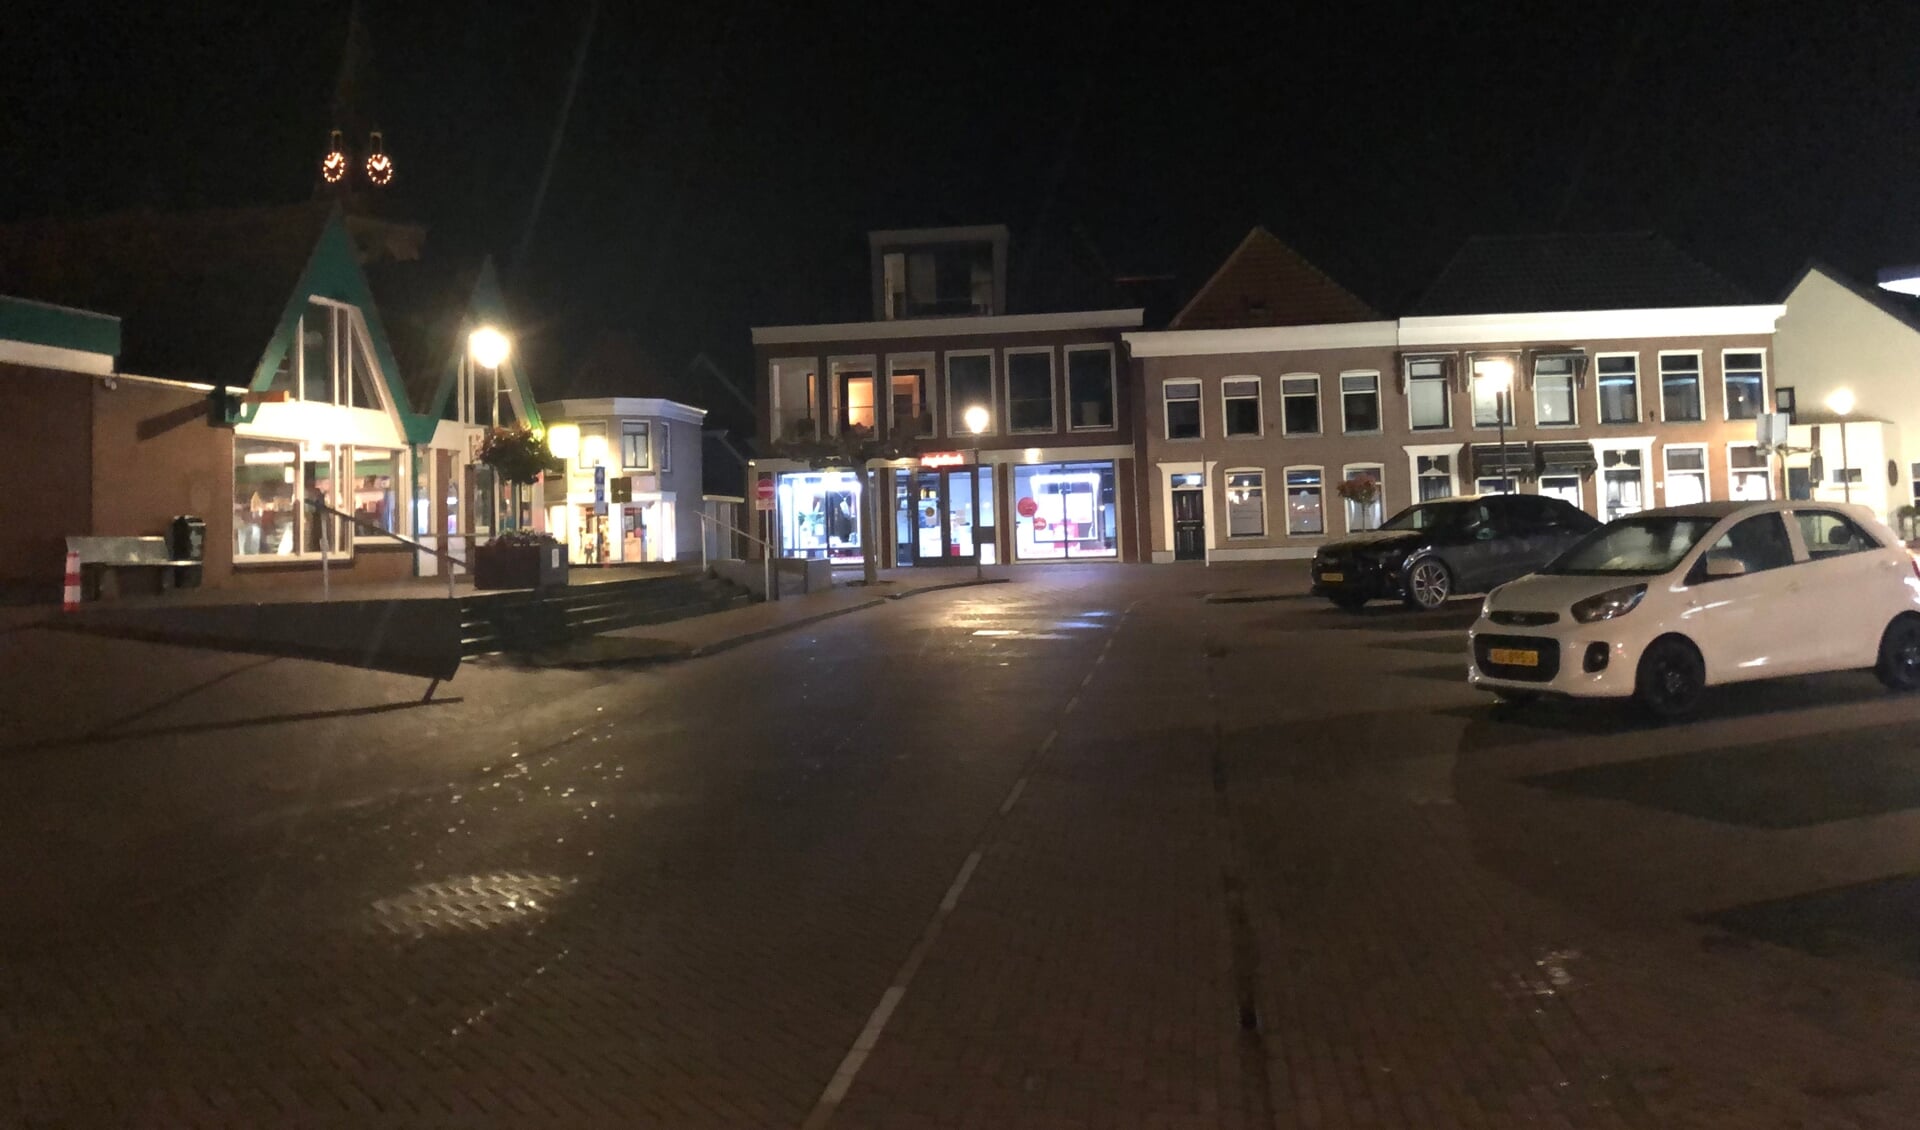 Lege straten in Genemuiden tijdens de avondklok.